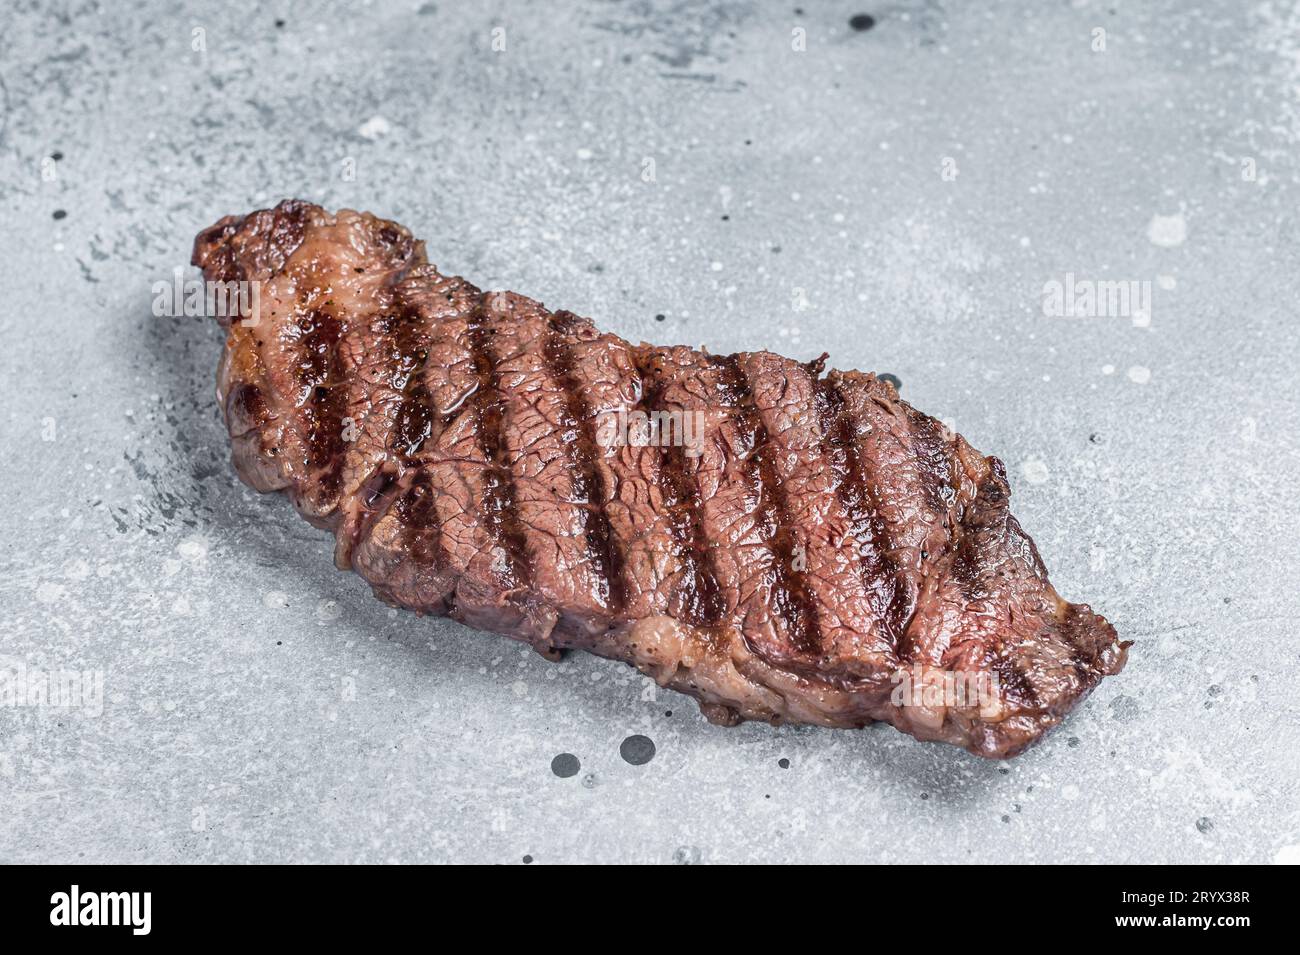 Barbecue steak de viande de bœuf de denver grillé sur une table. Arrière-plan gris. Vue de dessus. Banque D'Images